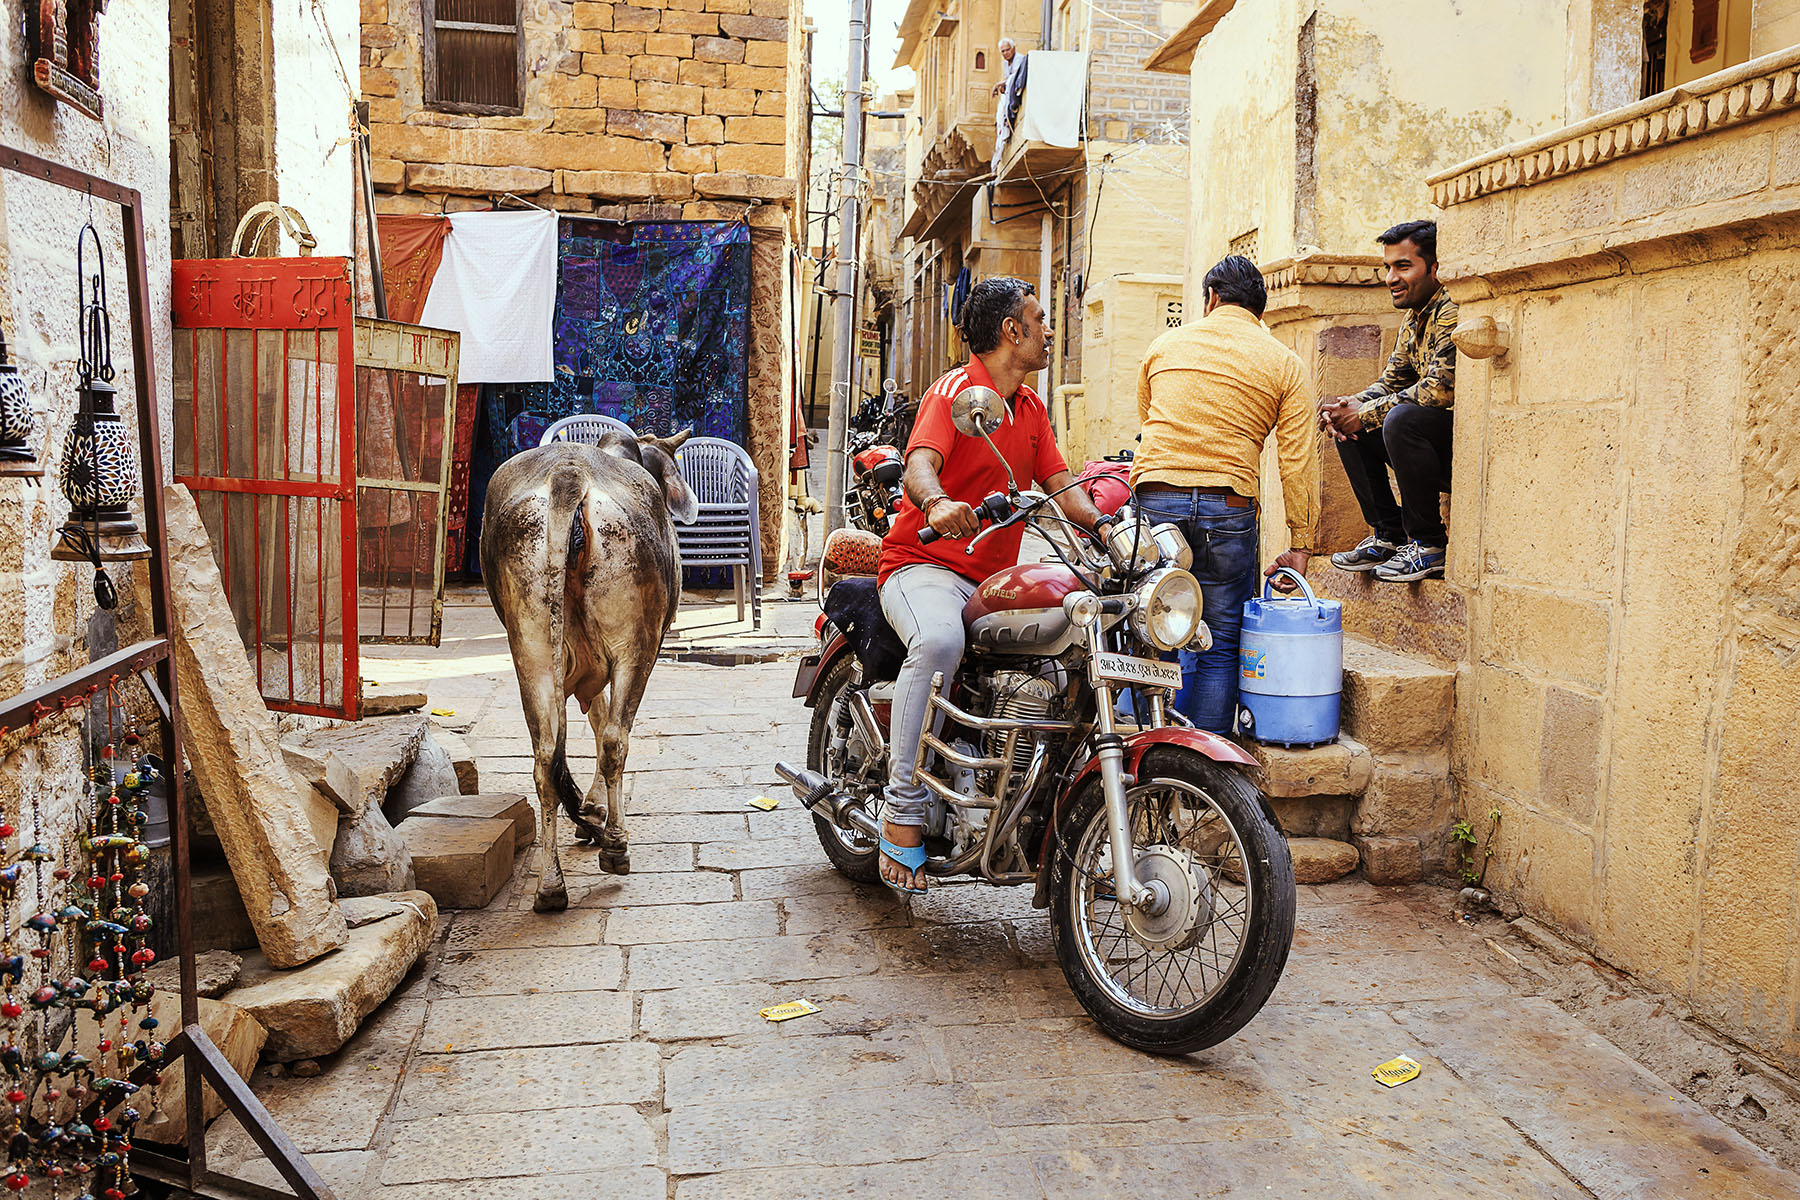 Jaisalmer – India